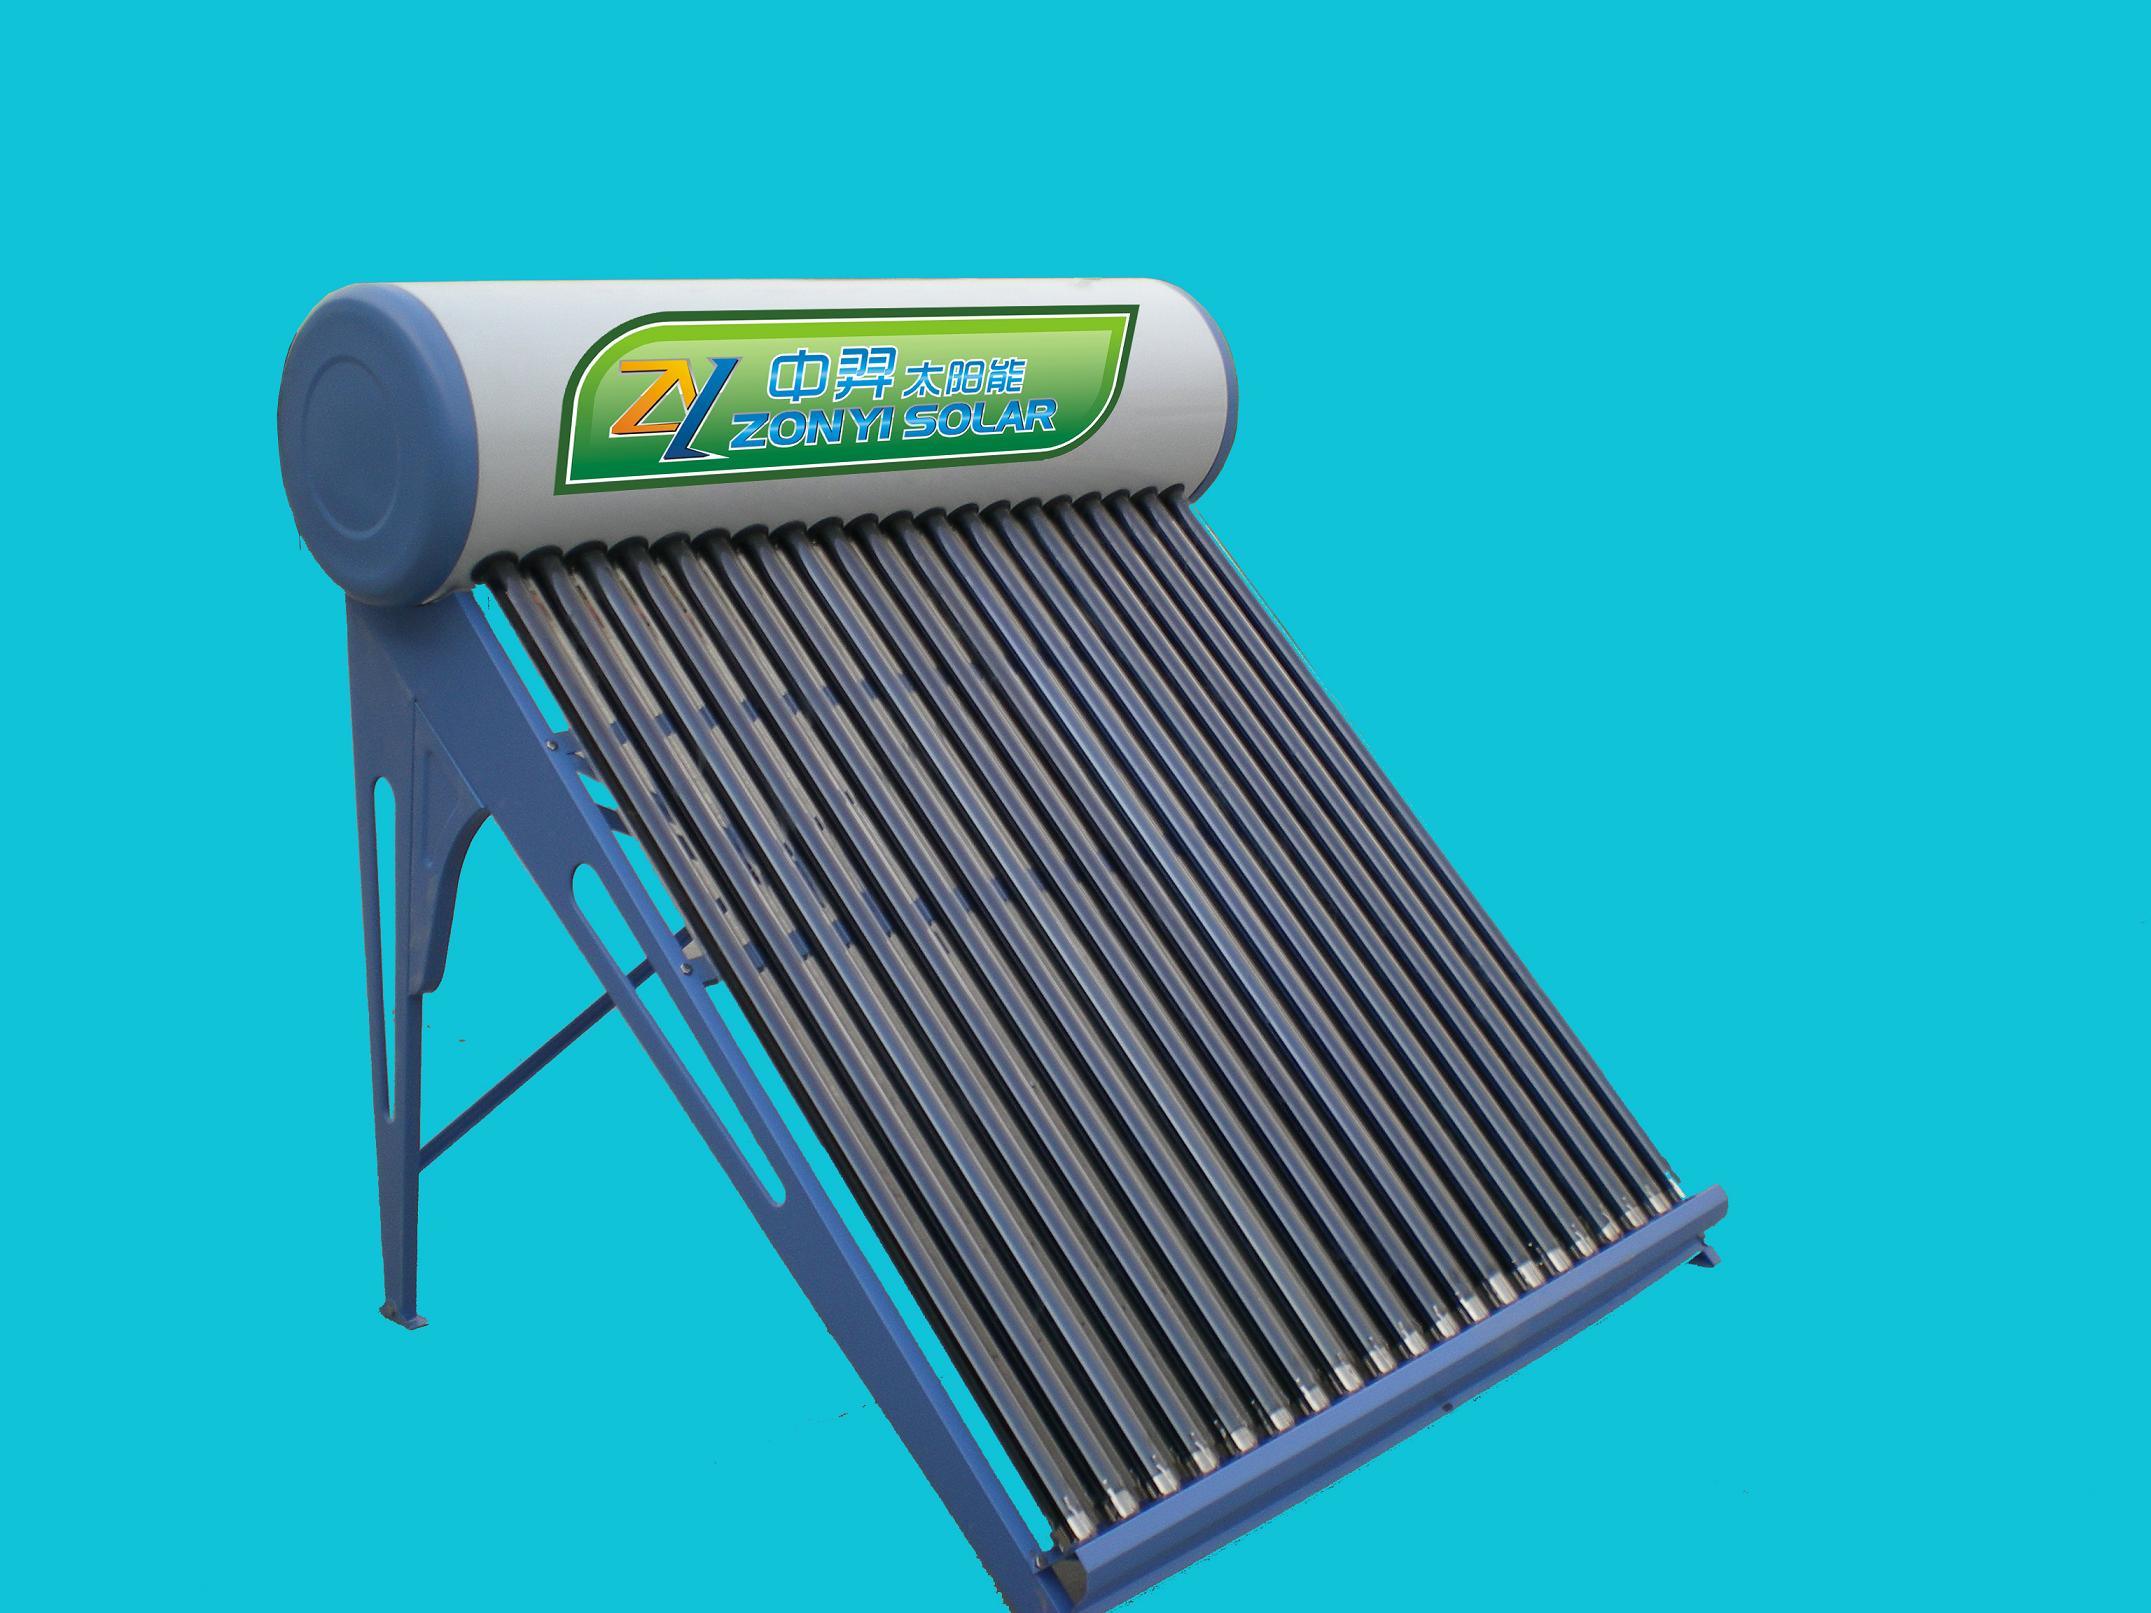 Compact Non-Pressure Solar Water Heater